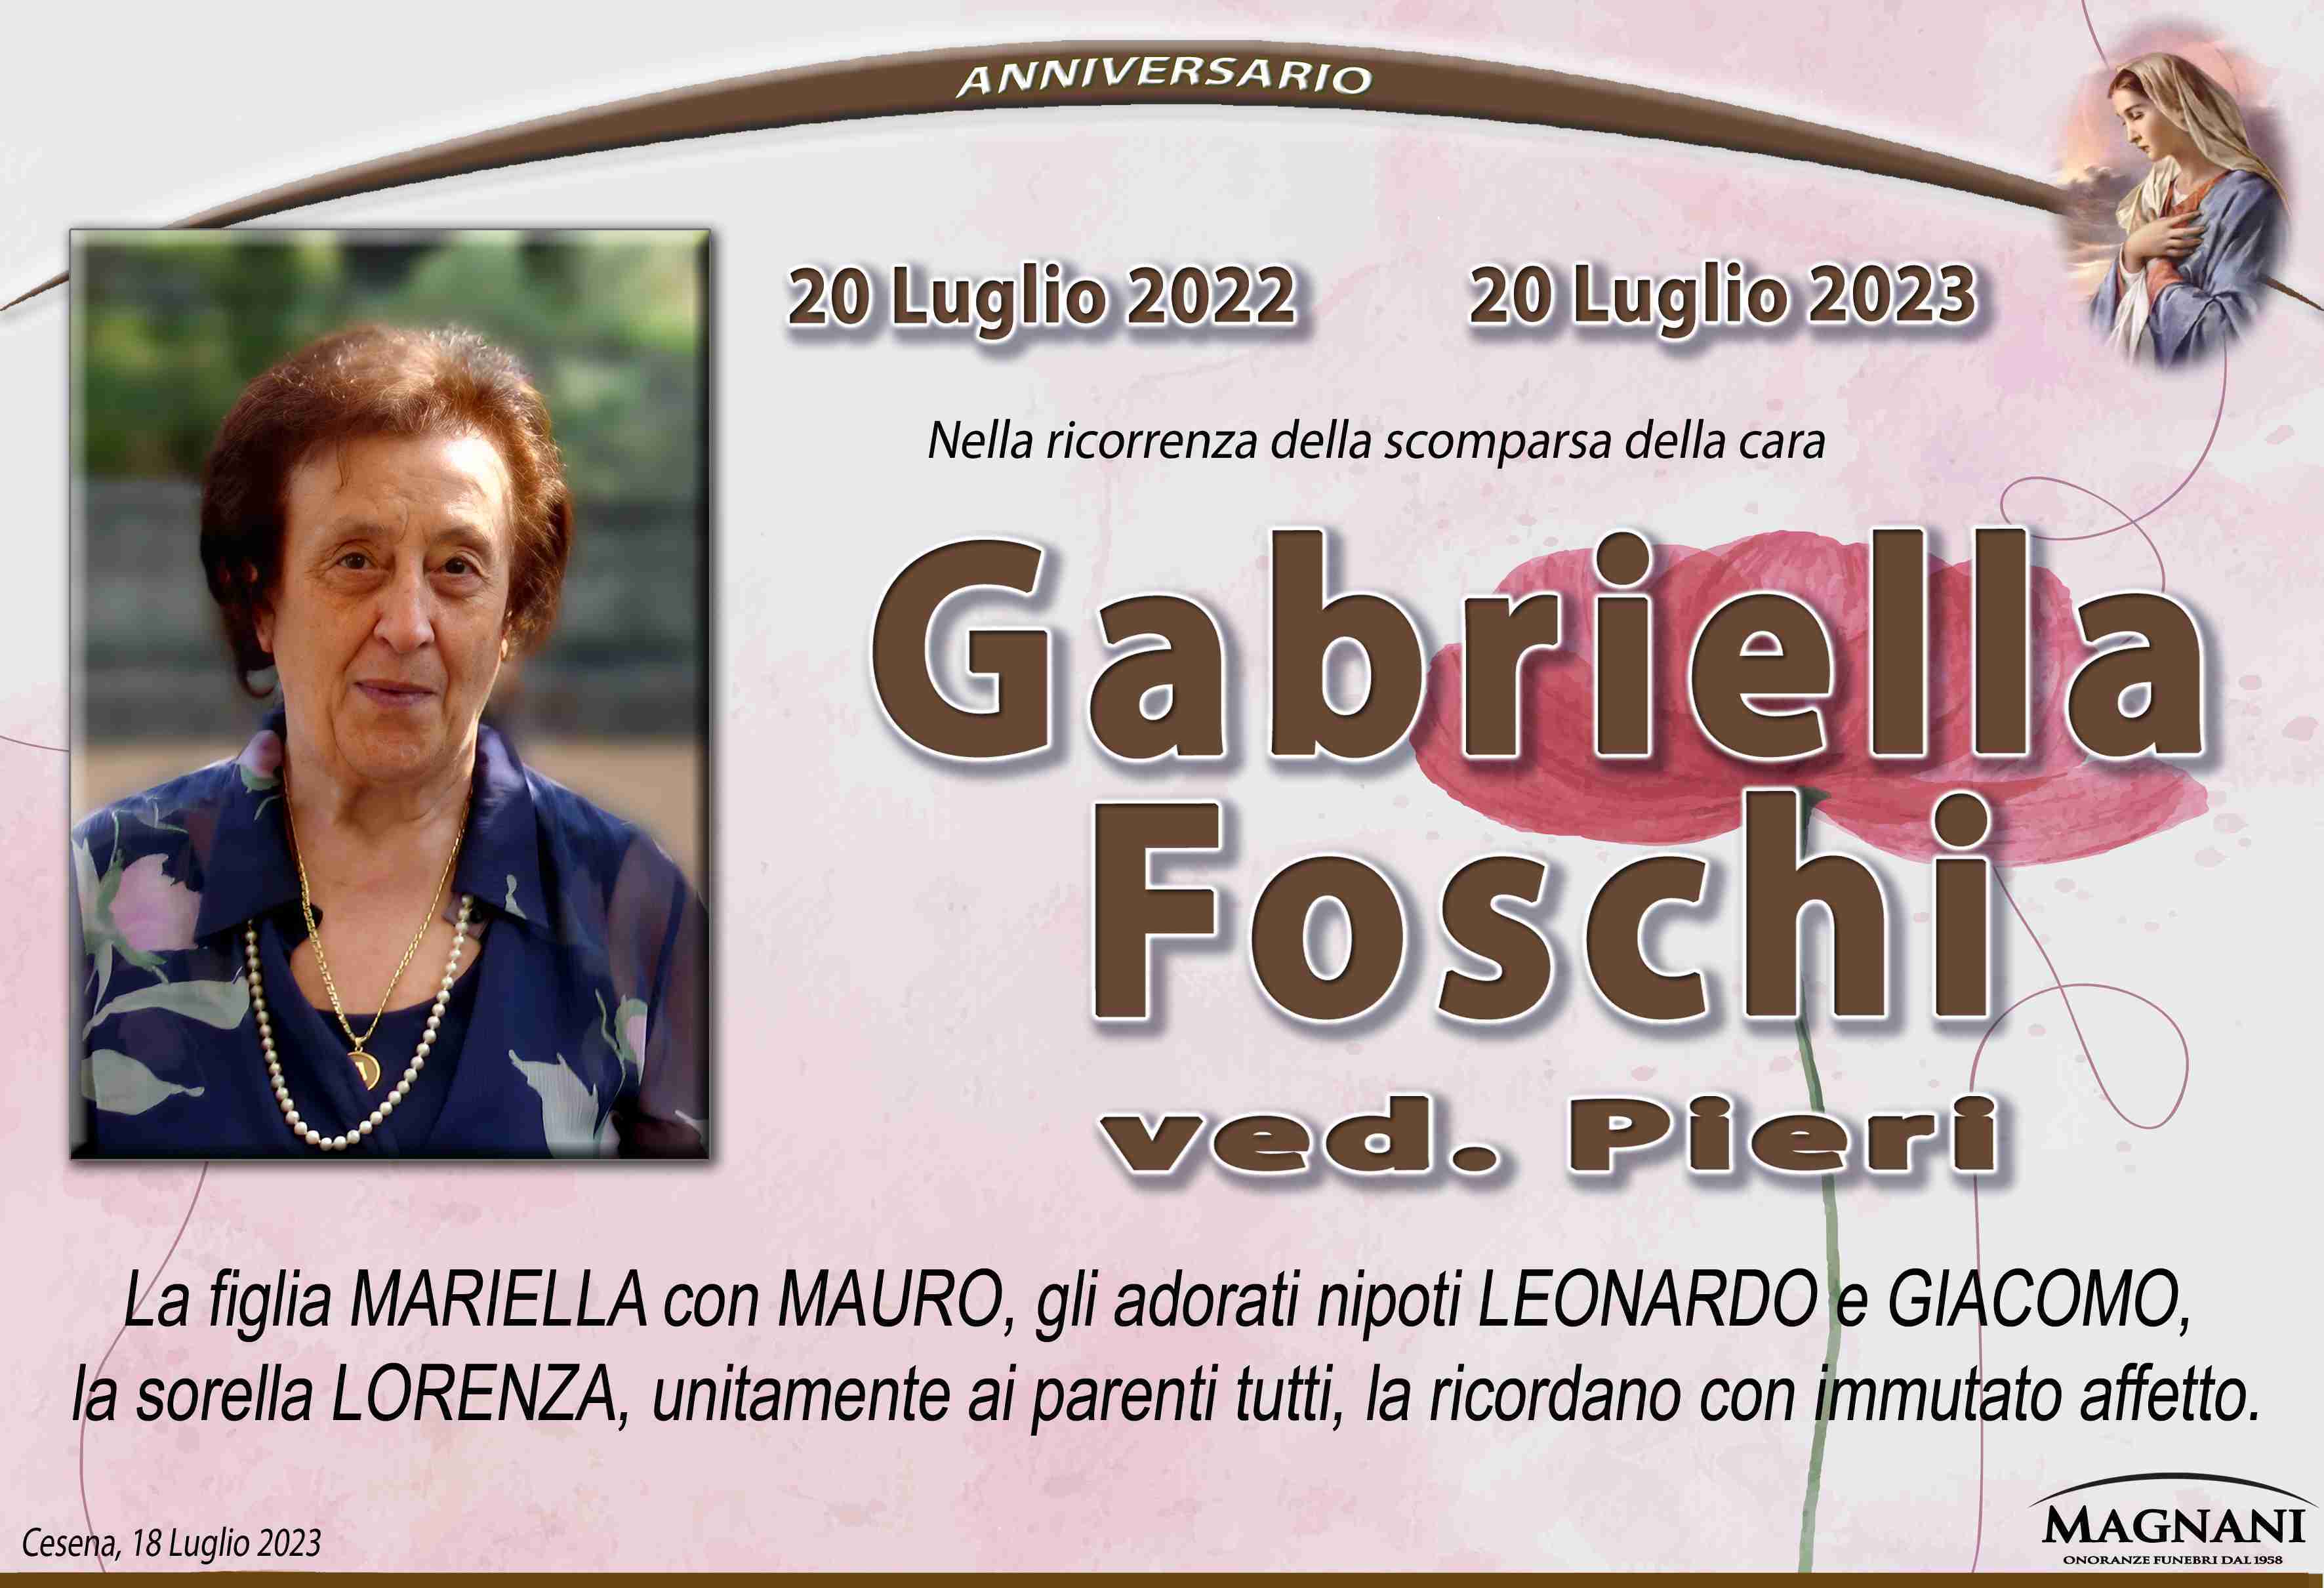 Gabriella Foschi